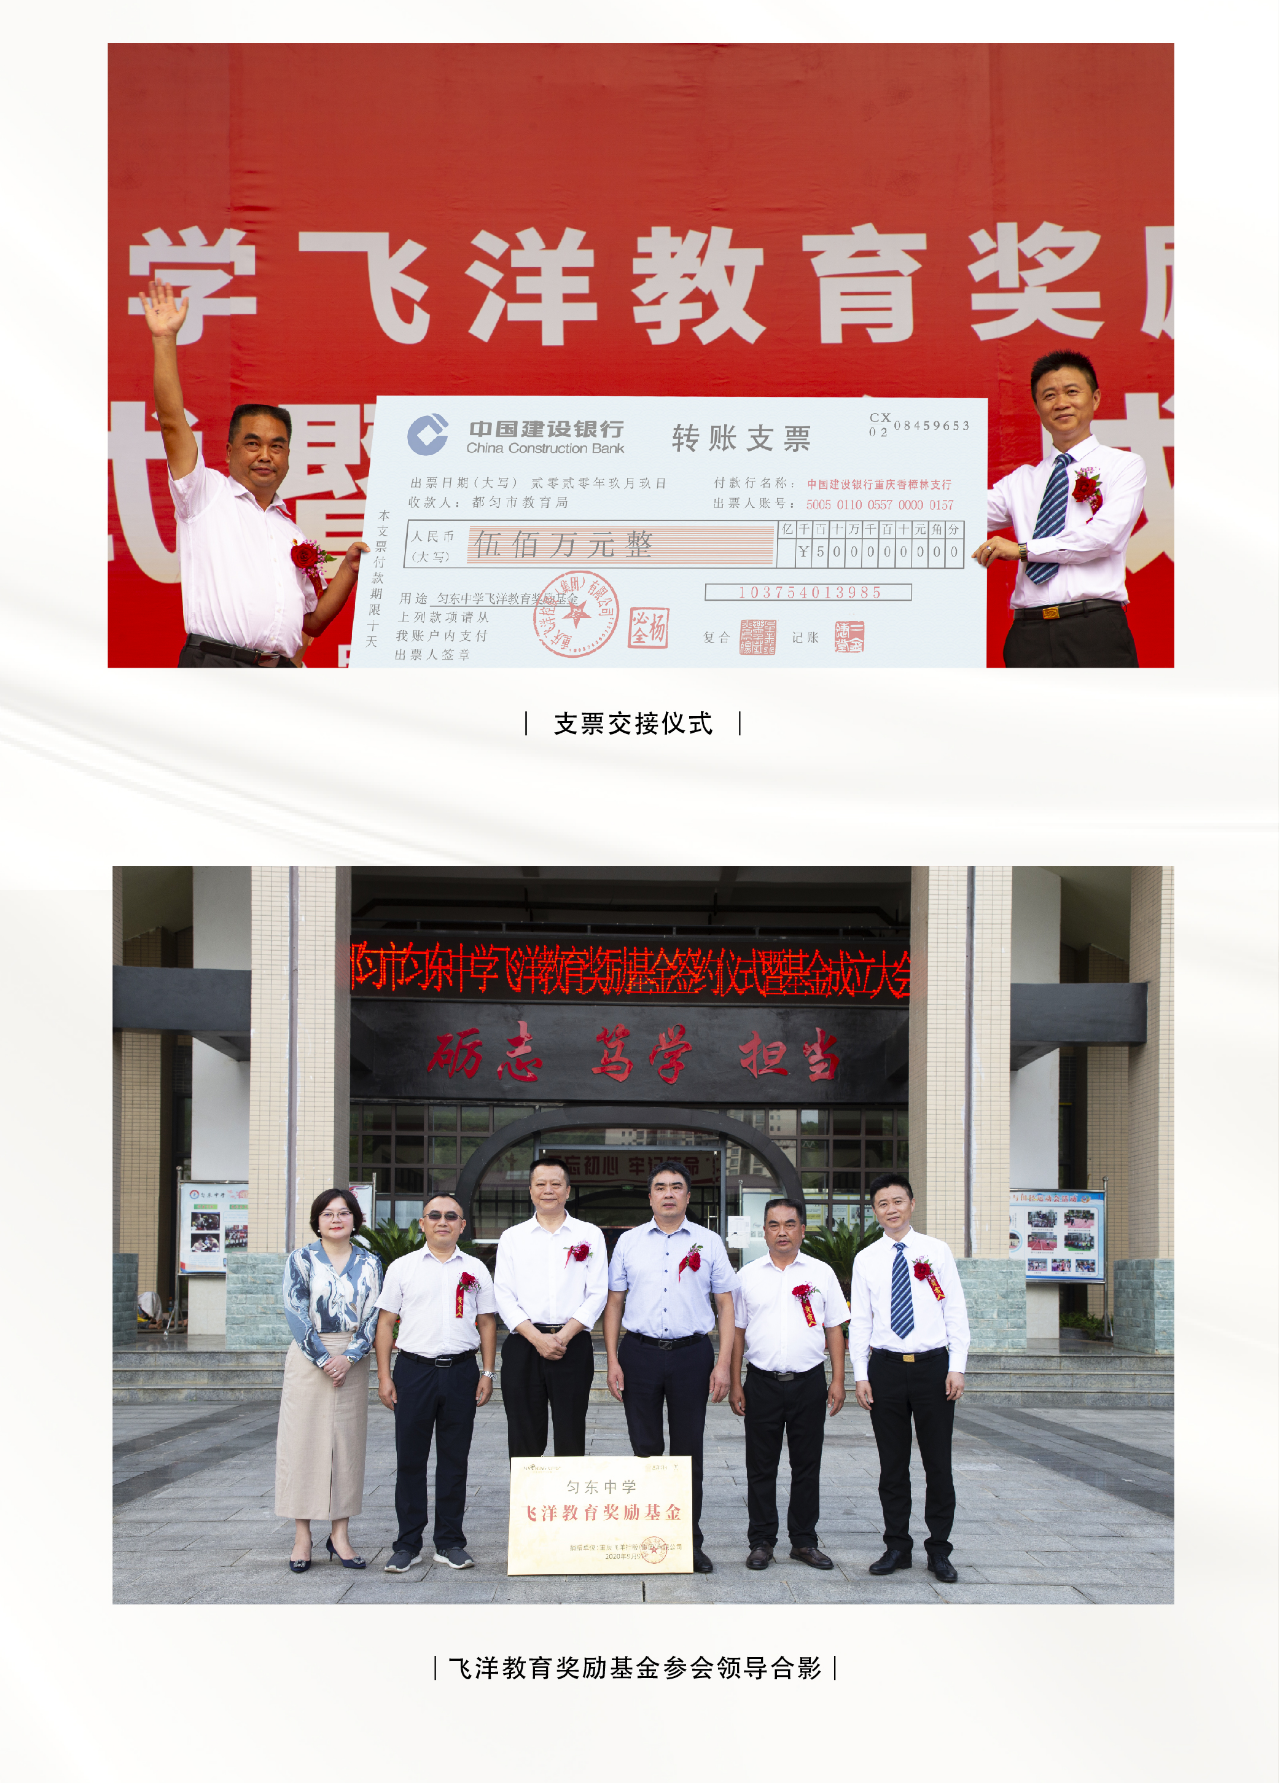 重庆飞洋控股集团捐赠500万元设立都匀匀东中学飞洋教育奖励基金